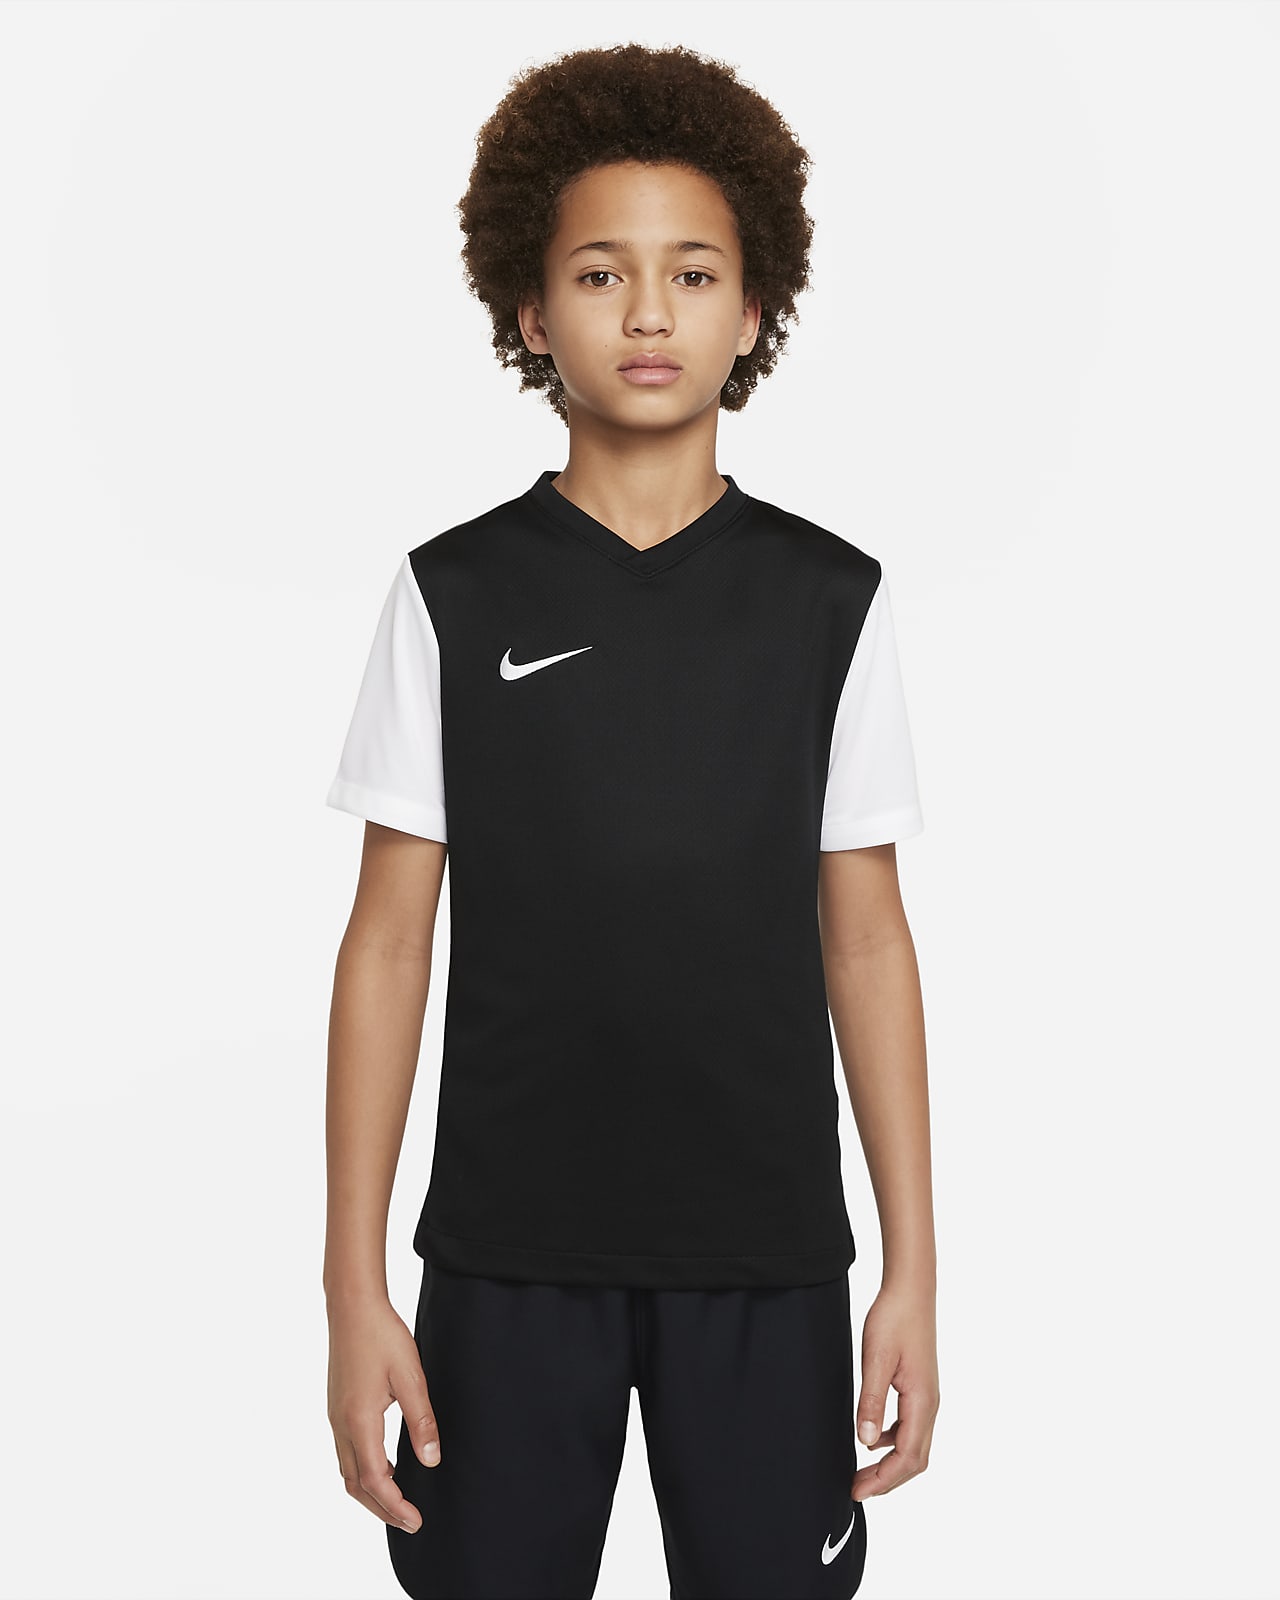 Pack Nike Tiempo Premier II pour Enfant. Maillot + Short + Chaussettes